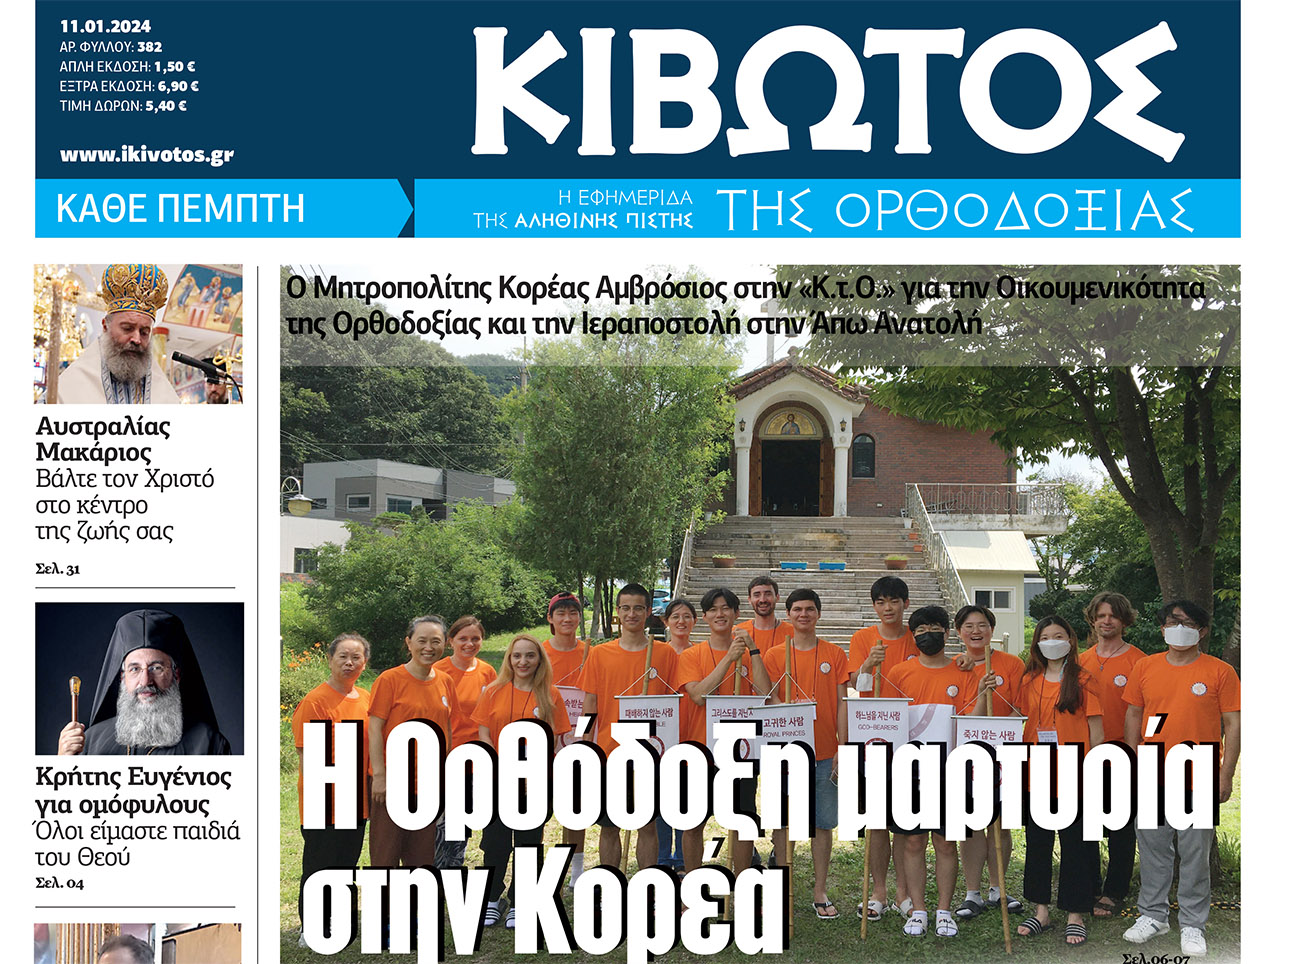 Την Πέμπτη, 11 Ιανουαρίου, κυκλοφορεί το νέο φύλλο της Εφημερίδας «Κιβωτός της Ορθοδοξίας»